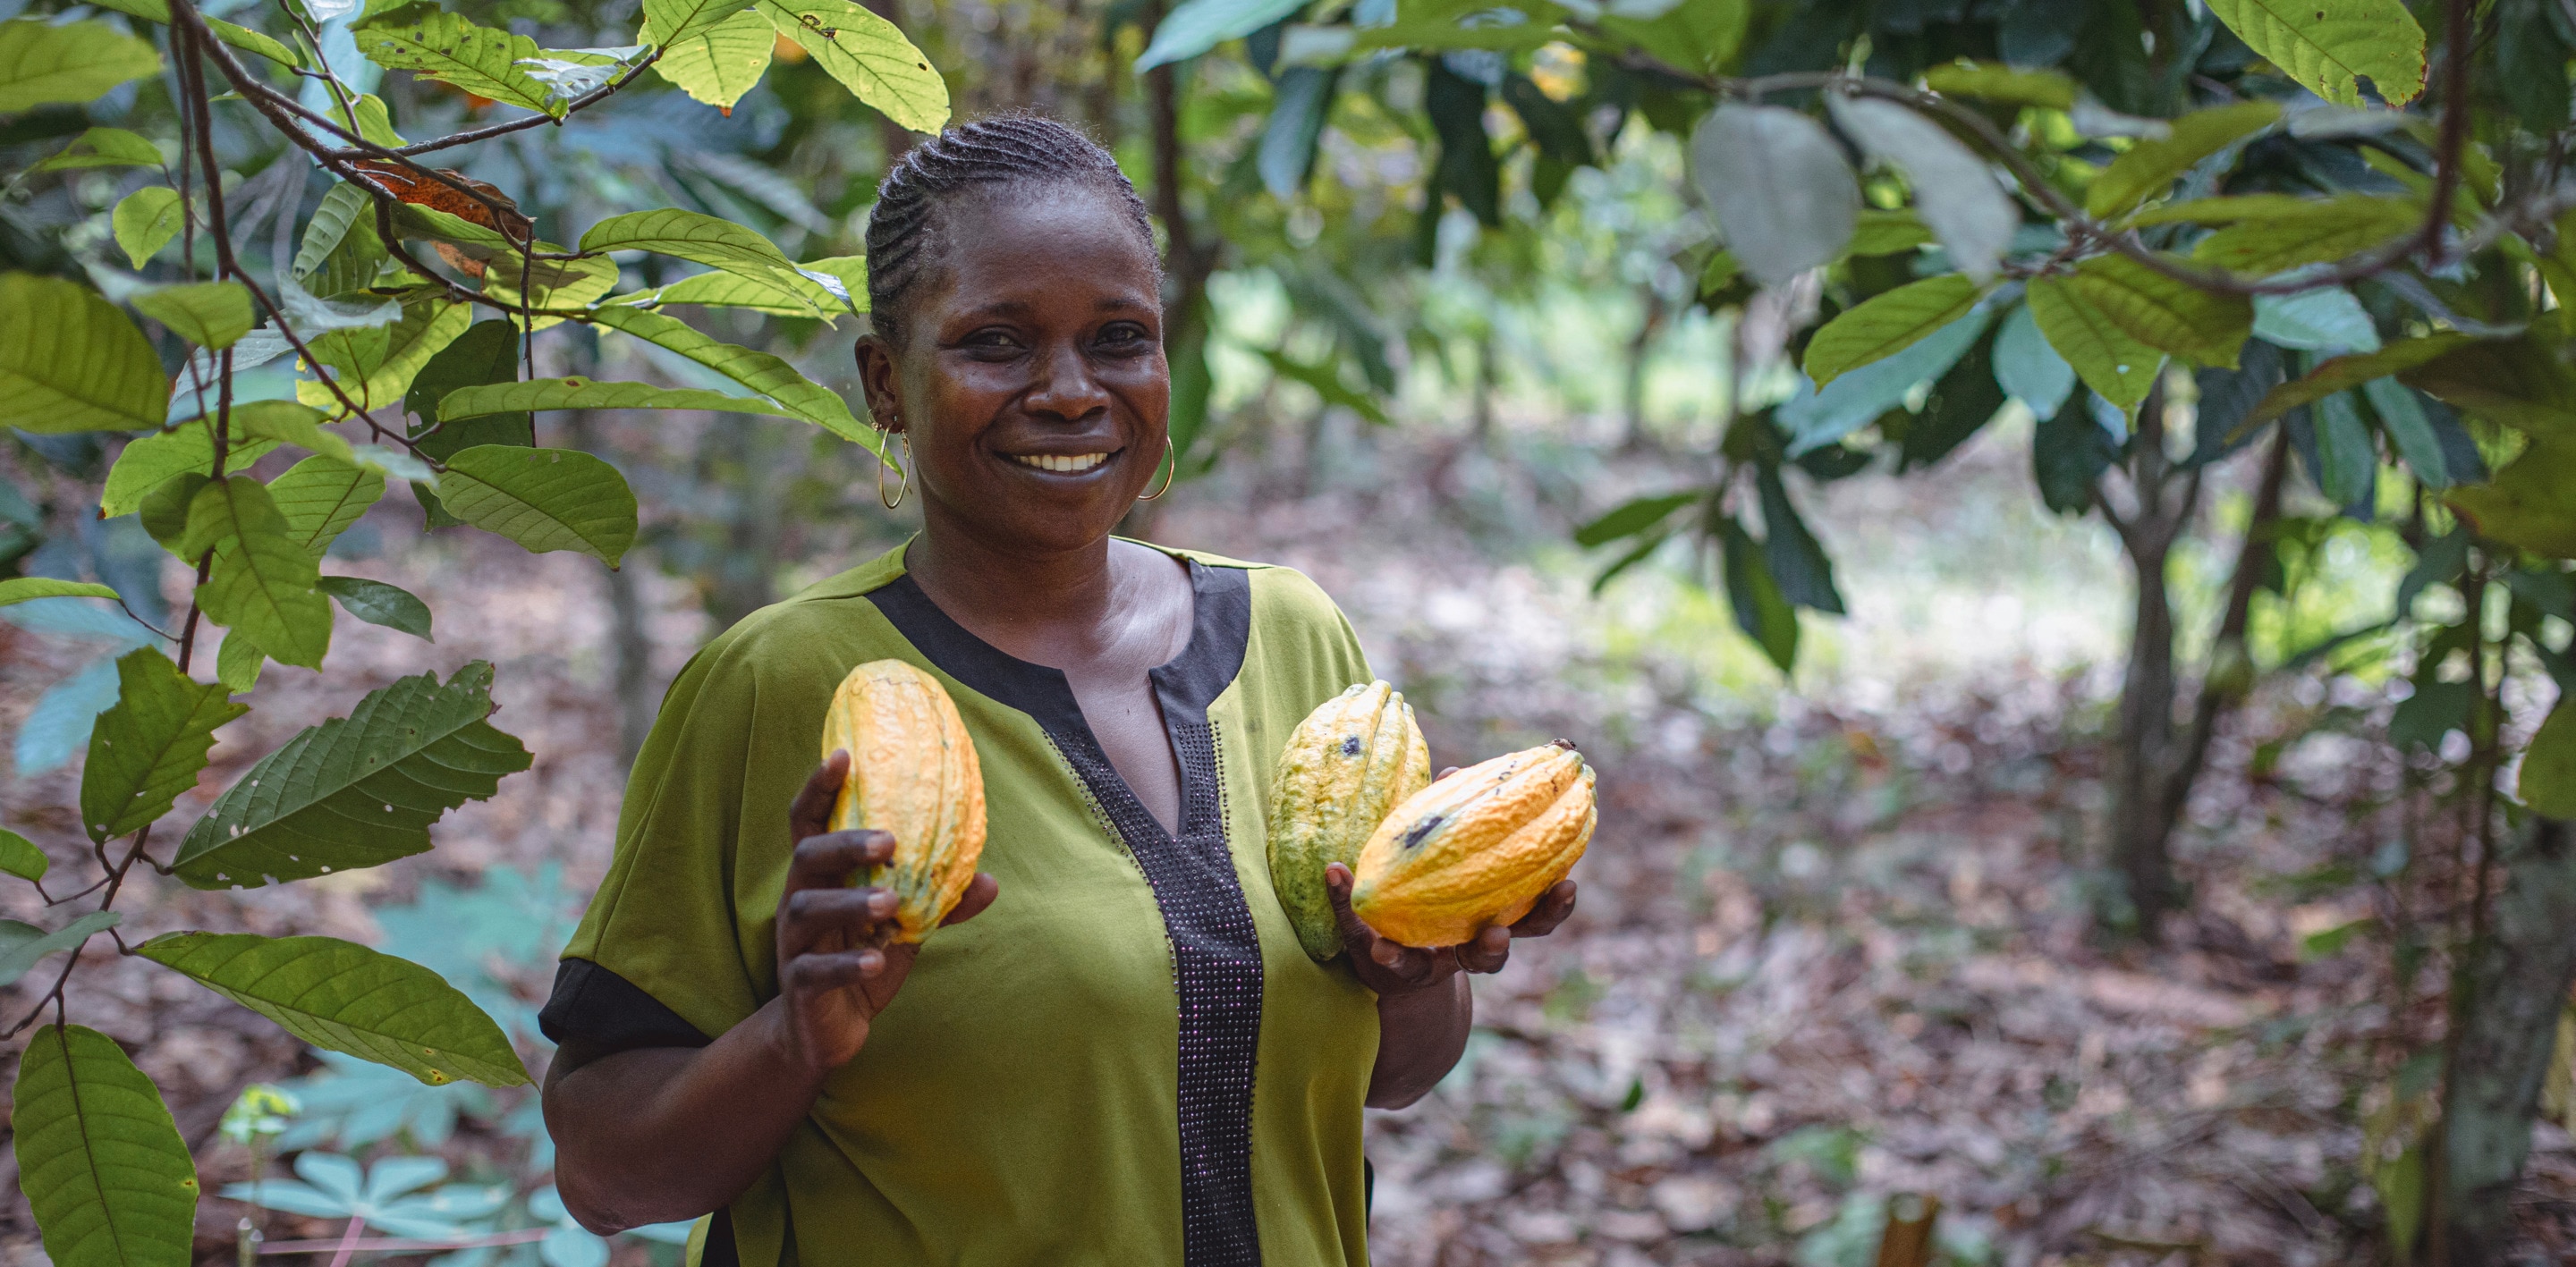 Granjera de cacao sonriente con un top verde y sosteniendo tres vainas de cacao amarillas.s